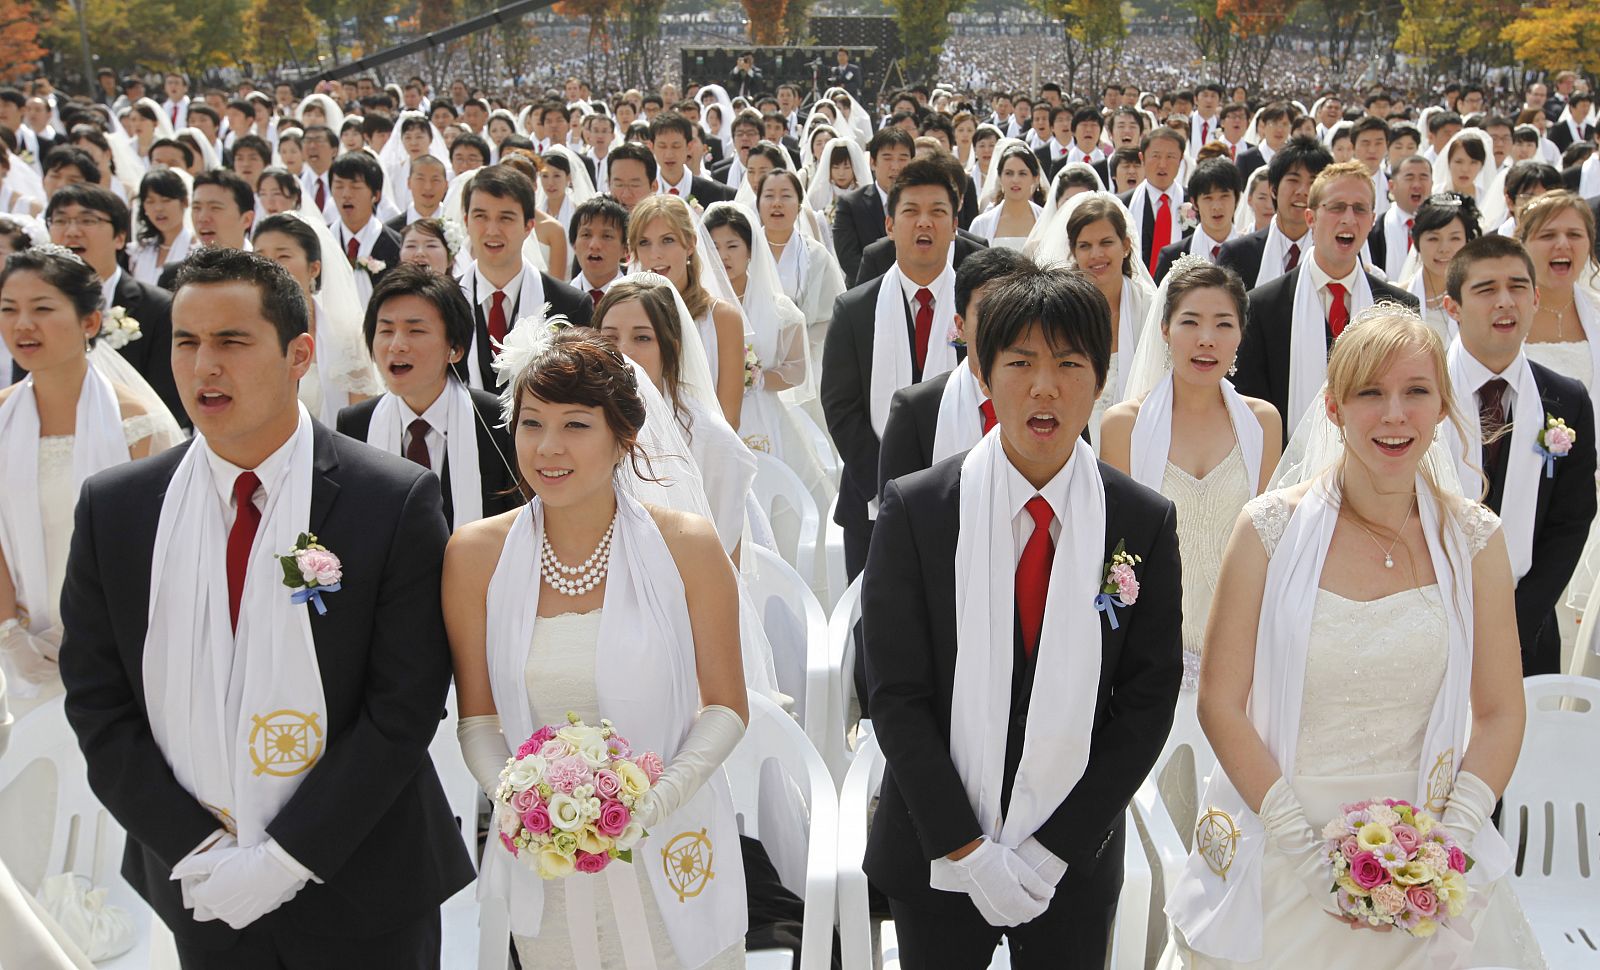 Miles de parejas se dan el 'Si quiero' en una ceremonia masiva en Seúl.